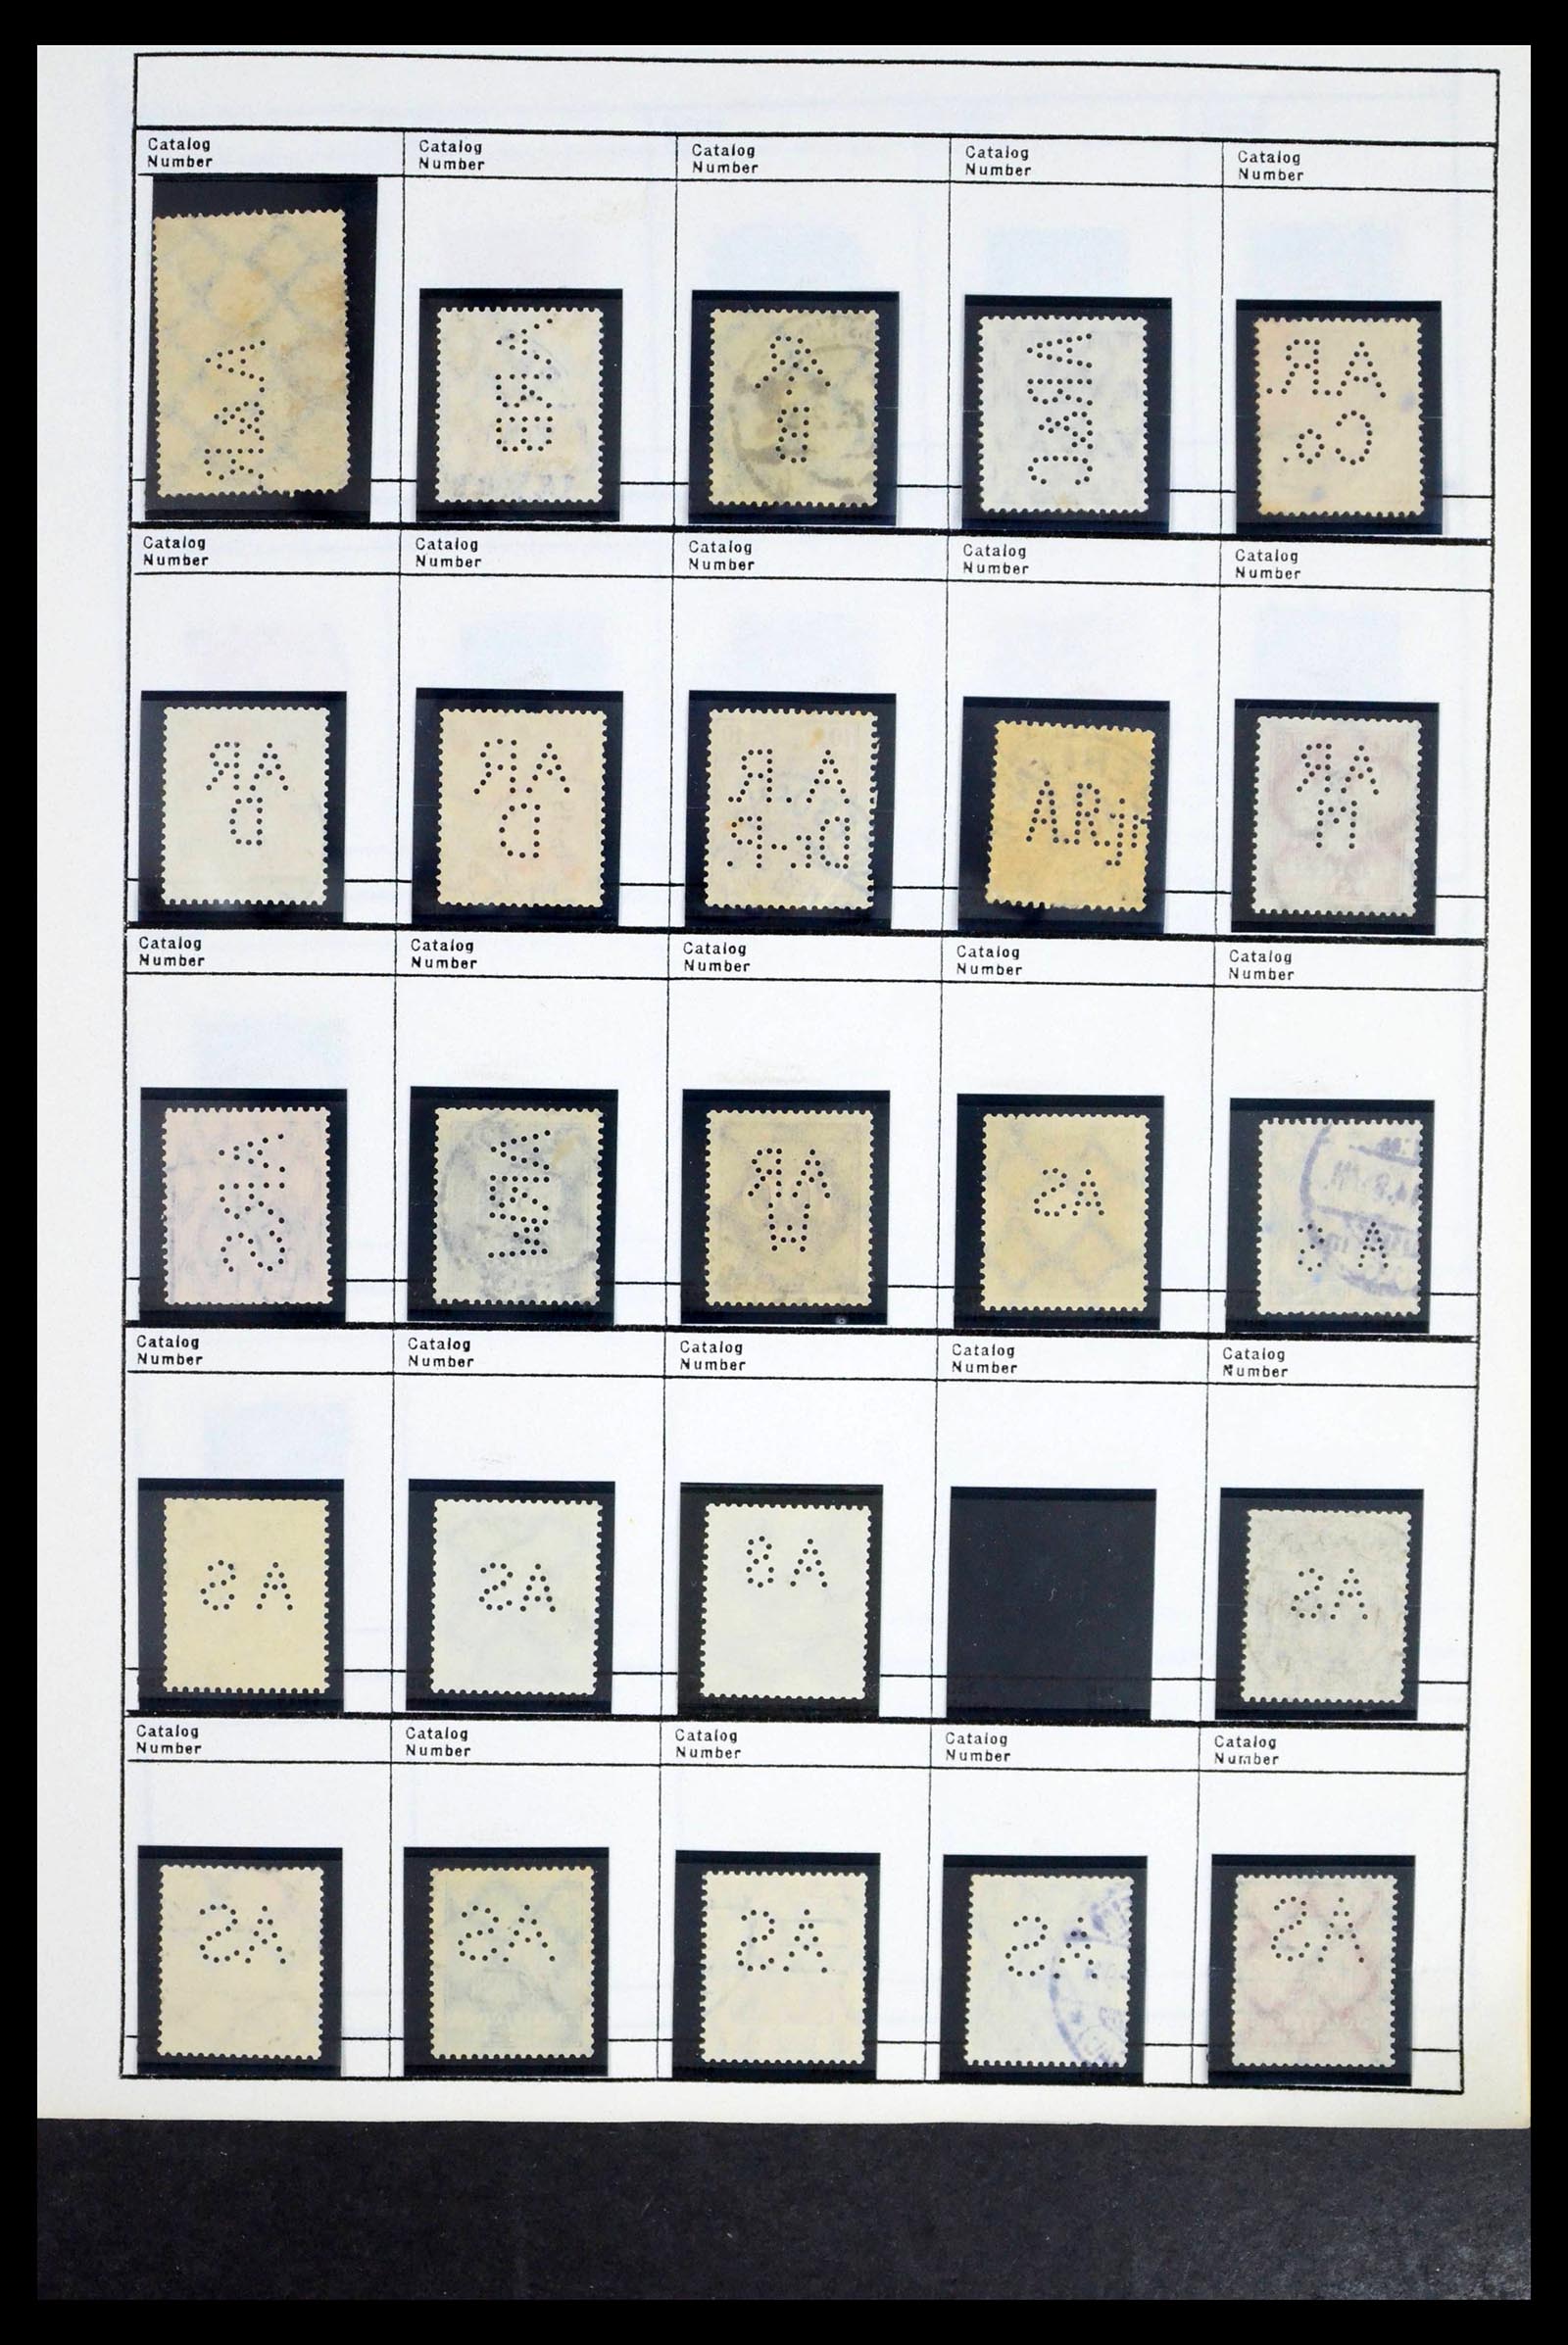 39480 0038 - Stamp collection 39480 German Reich perfins 1880-1955.